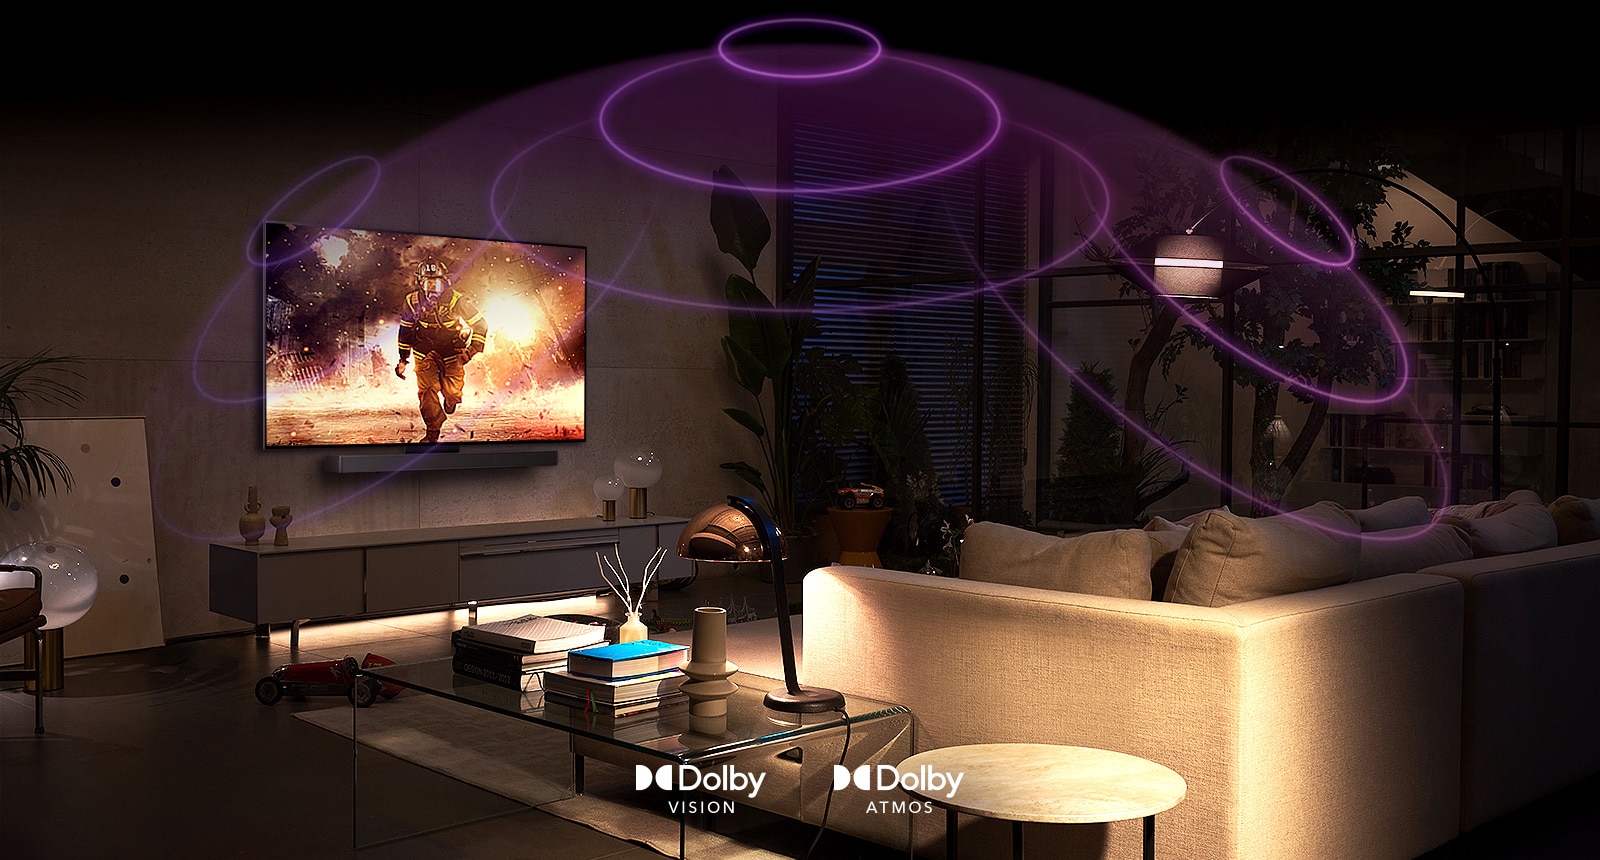 Obrázek místnosti s televizorem LG OLED, který přehrává akční film. Zvukové vlny vytváří kupoli mezi pohovkou a televizorem, což znázorňuje pohlcující prostorový zvuk.